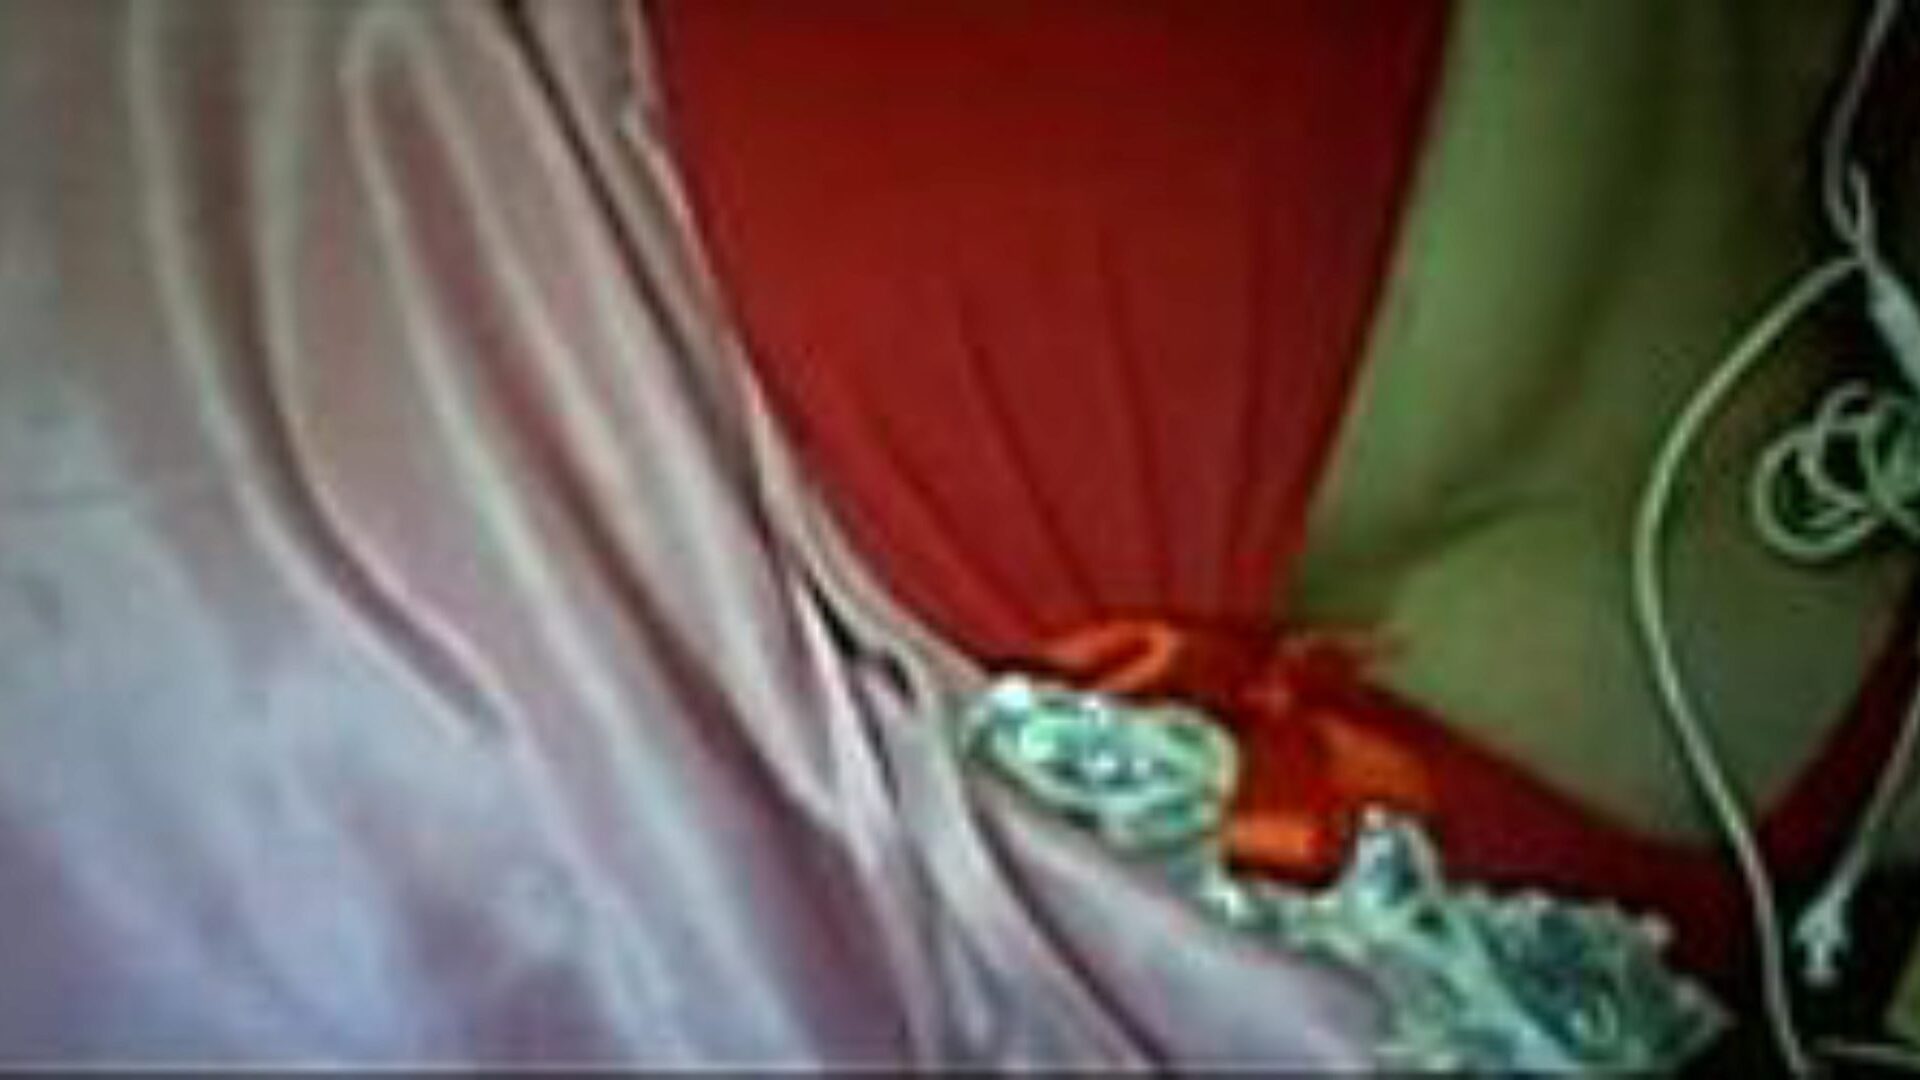 lbwa awi: free big tits & agent porn video a6 - xhamster regarde la vidéo de sexe du tube lbwa awi gratuitement sur xhamster, avec la collection la plus sexy de concerts de clips pornos égyptiens arabes, gros seins et agents